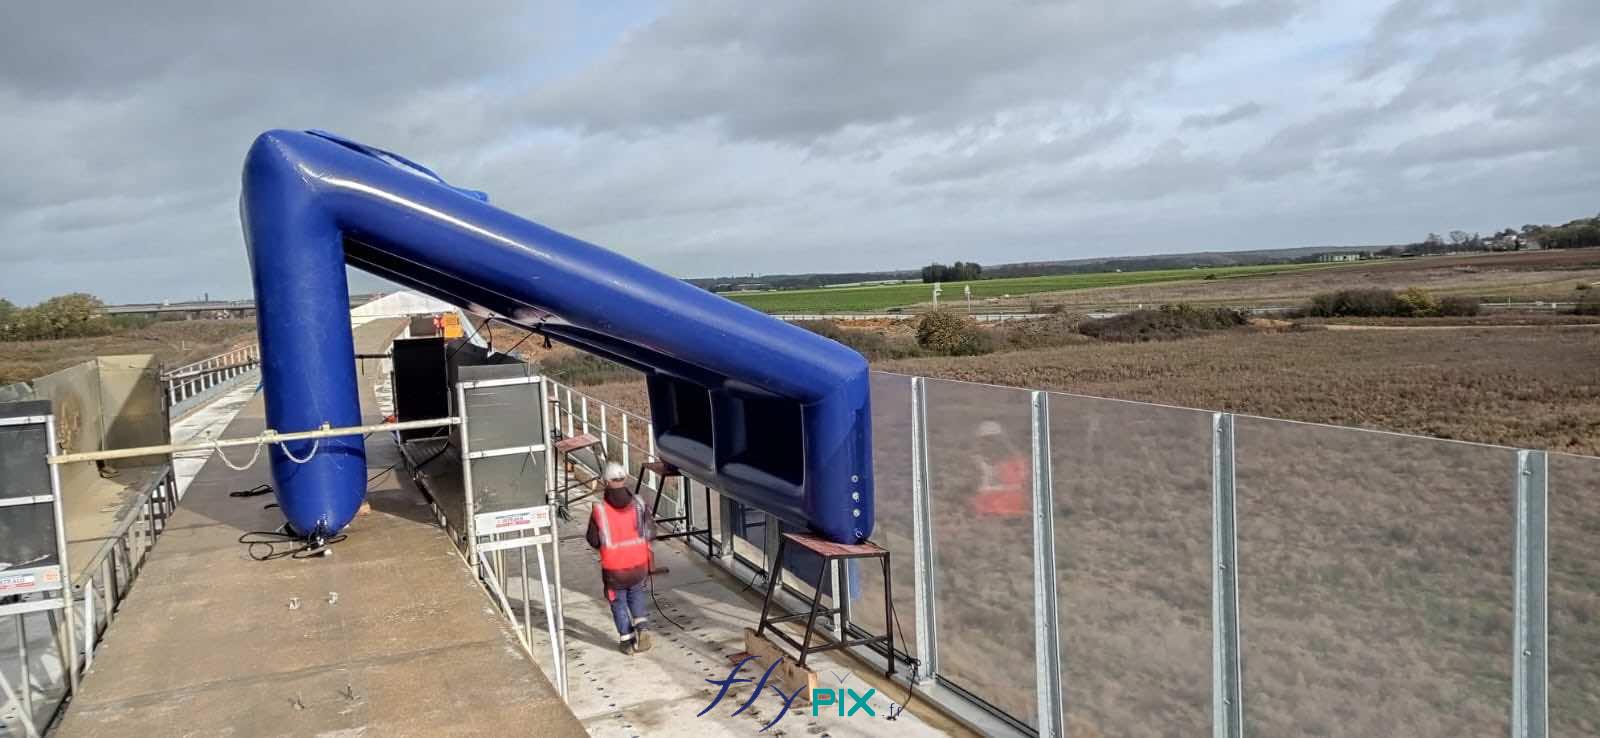 FlyPix abri tente gonflable air captif ventile pompe turbine enveloppe pvc 045 060mm chantier viaduc EUROVIA 9